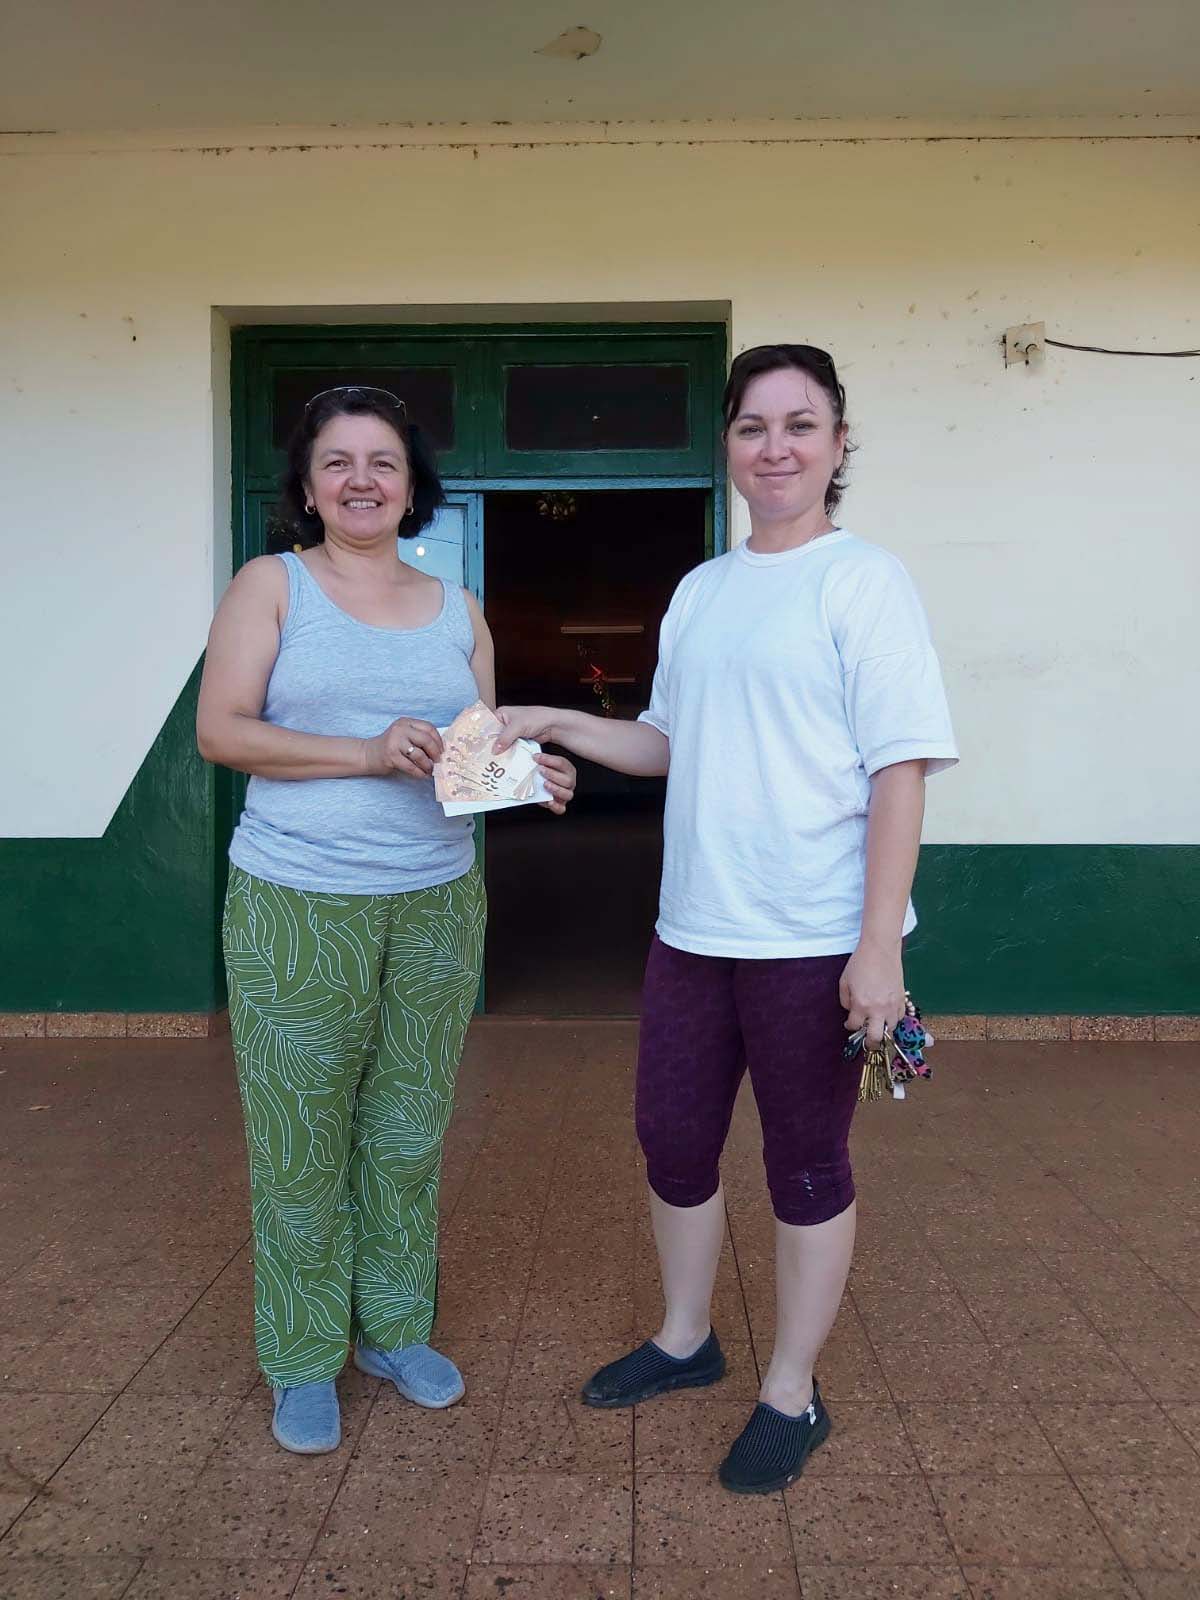 Spendenübergabe in Oberá: Lidia Trost (links) übergibt unsere Spende an ihre Schwester Claudia Davalos, die Direktorin der Schule Nr. 191. (c) Klaus Trost